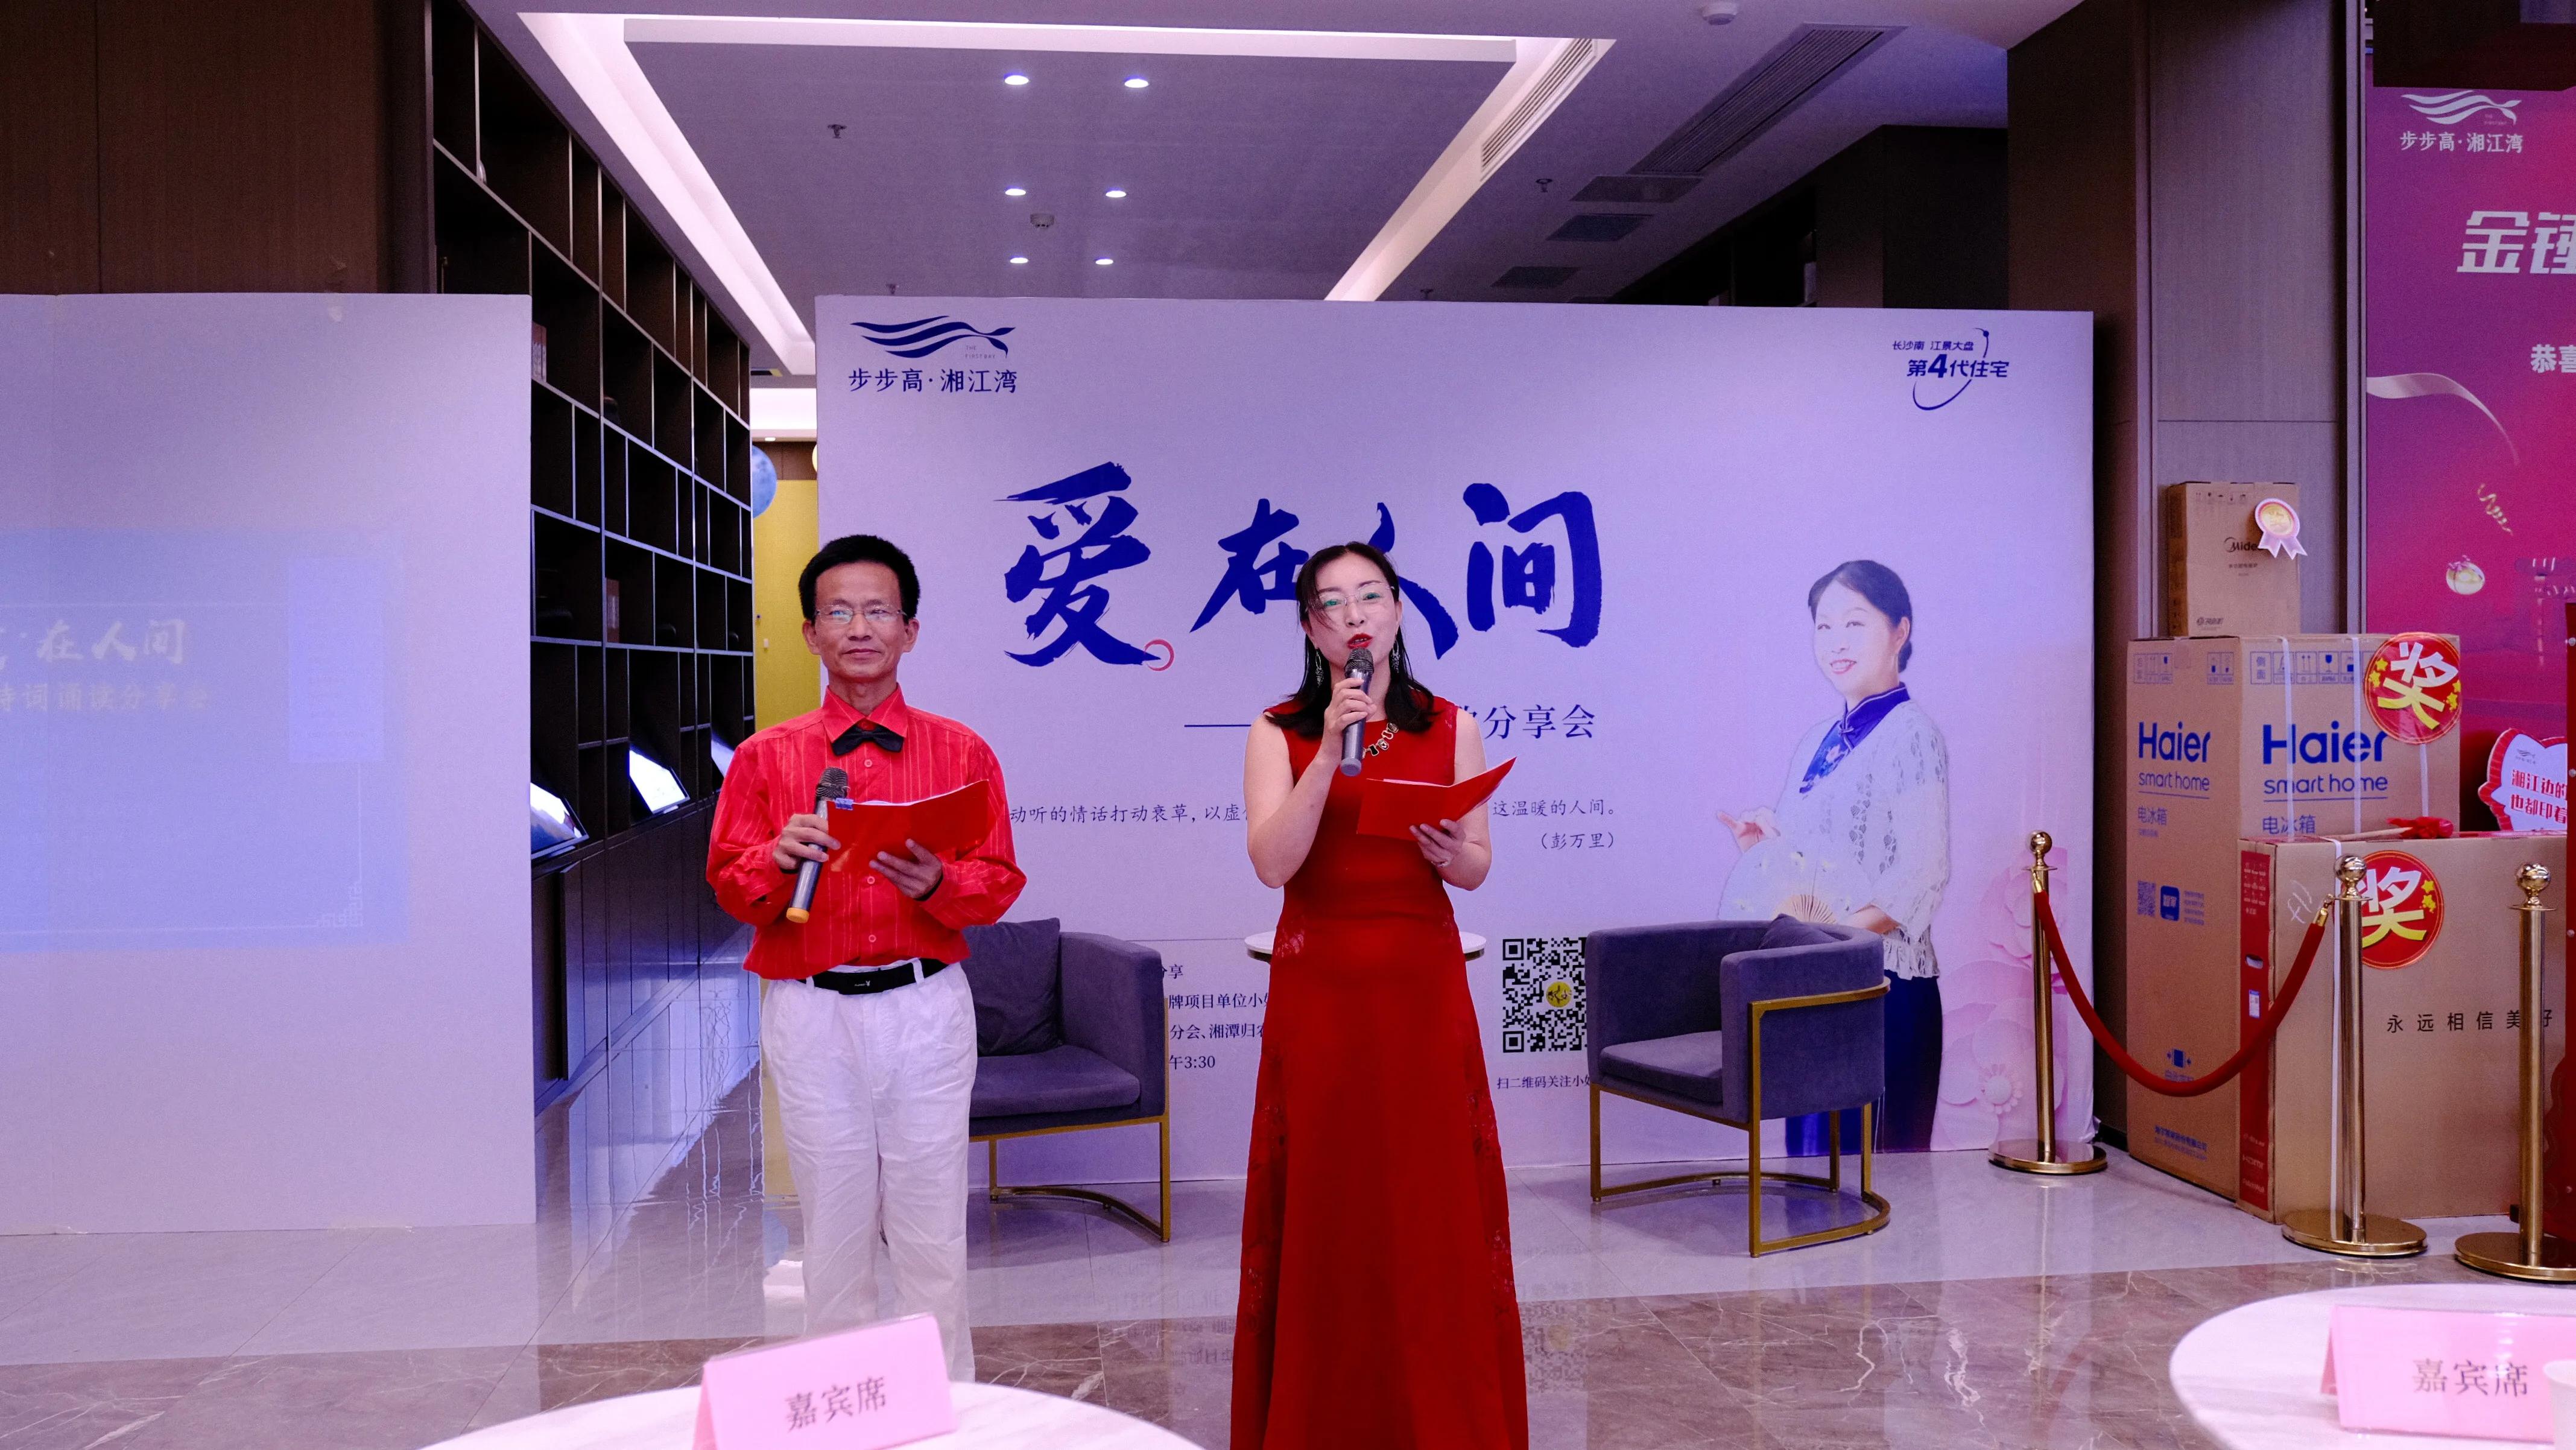 “爱在人间——彭万里诗歌分享会”在湘潭举行